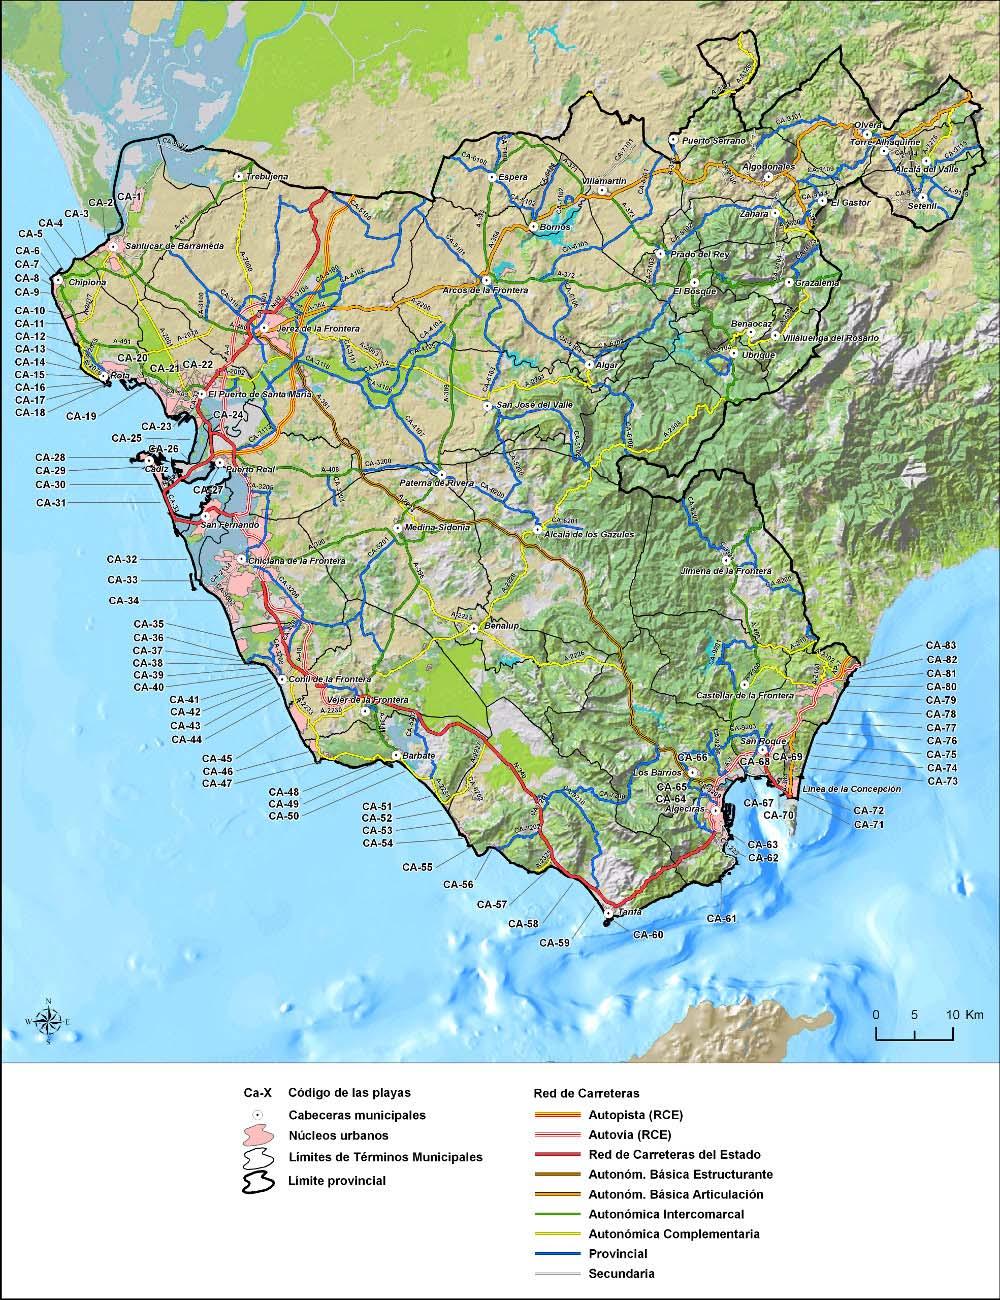 El Catálogo de Playas El litoral gaditano Caracterización general, Costa